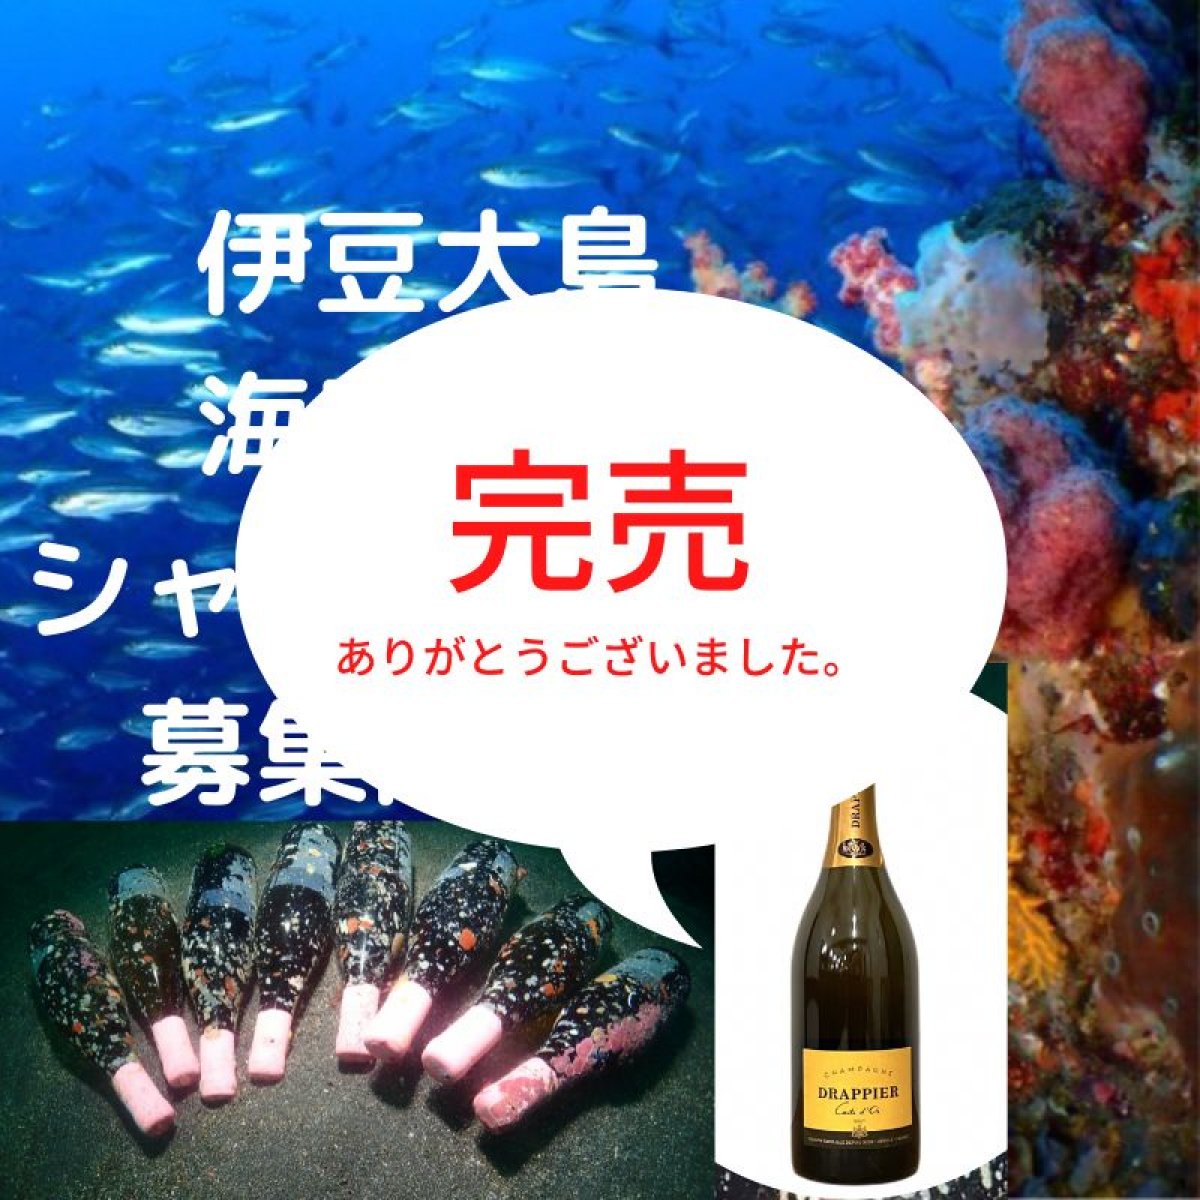 海底熟成ワイン募集開始！伊豆大島の海底で1年間熟成させたシャンパーニュ・ドラピエ（750ml ）を飲んでみませんか？